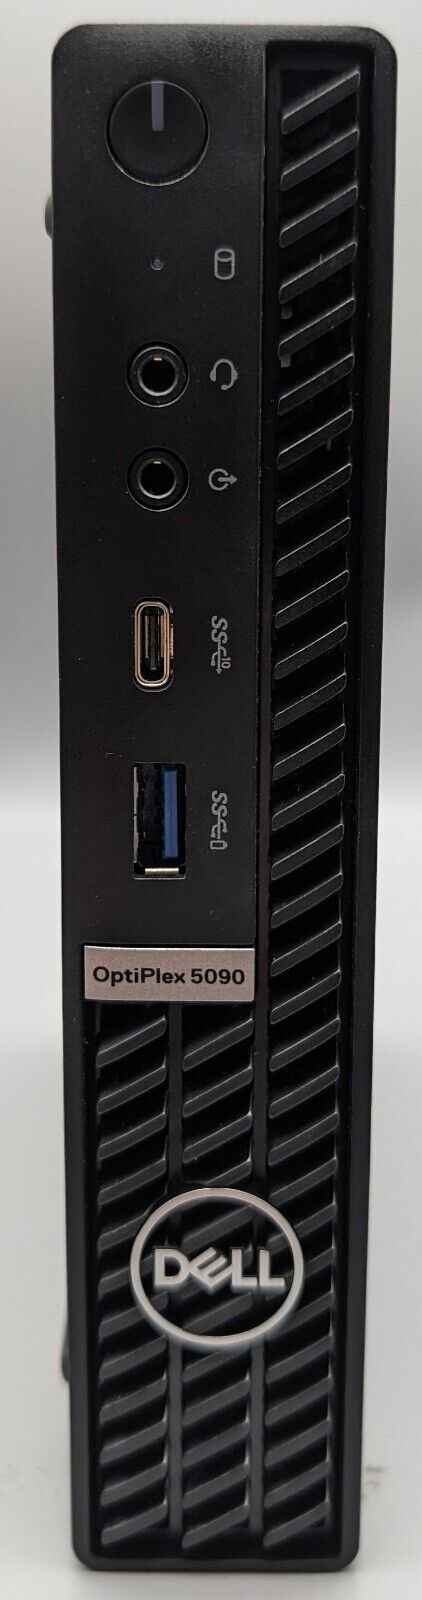 Dell OptiPlex 5090 Micro PC i7-10700T@2.00GHz, 16GB Ram, 250GB NVMe, Win. 10 Pro